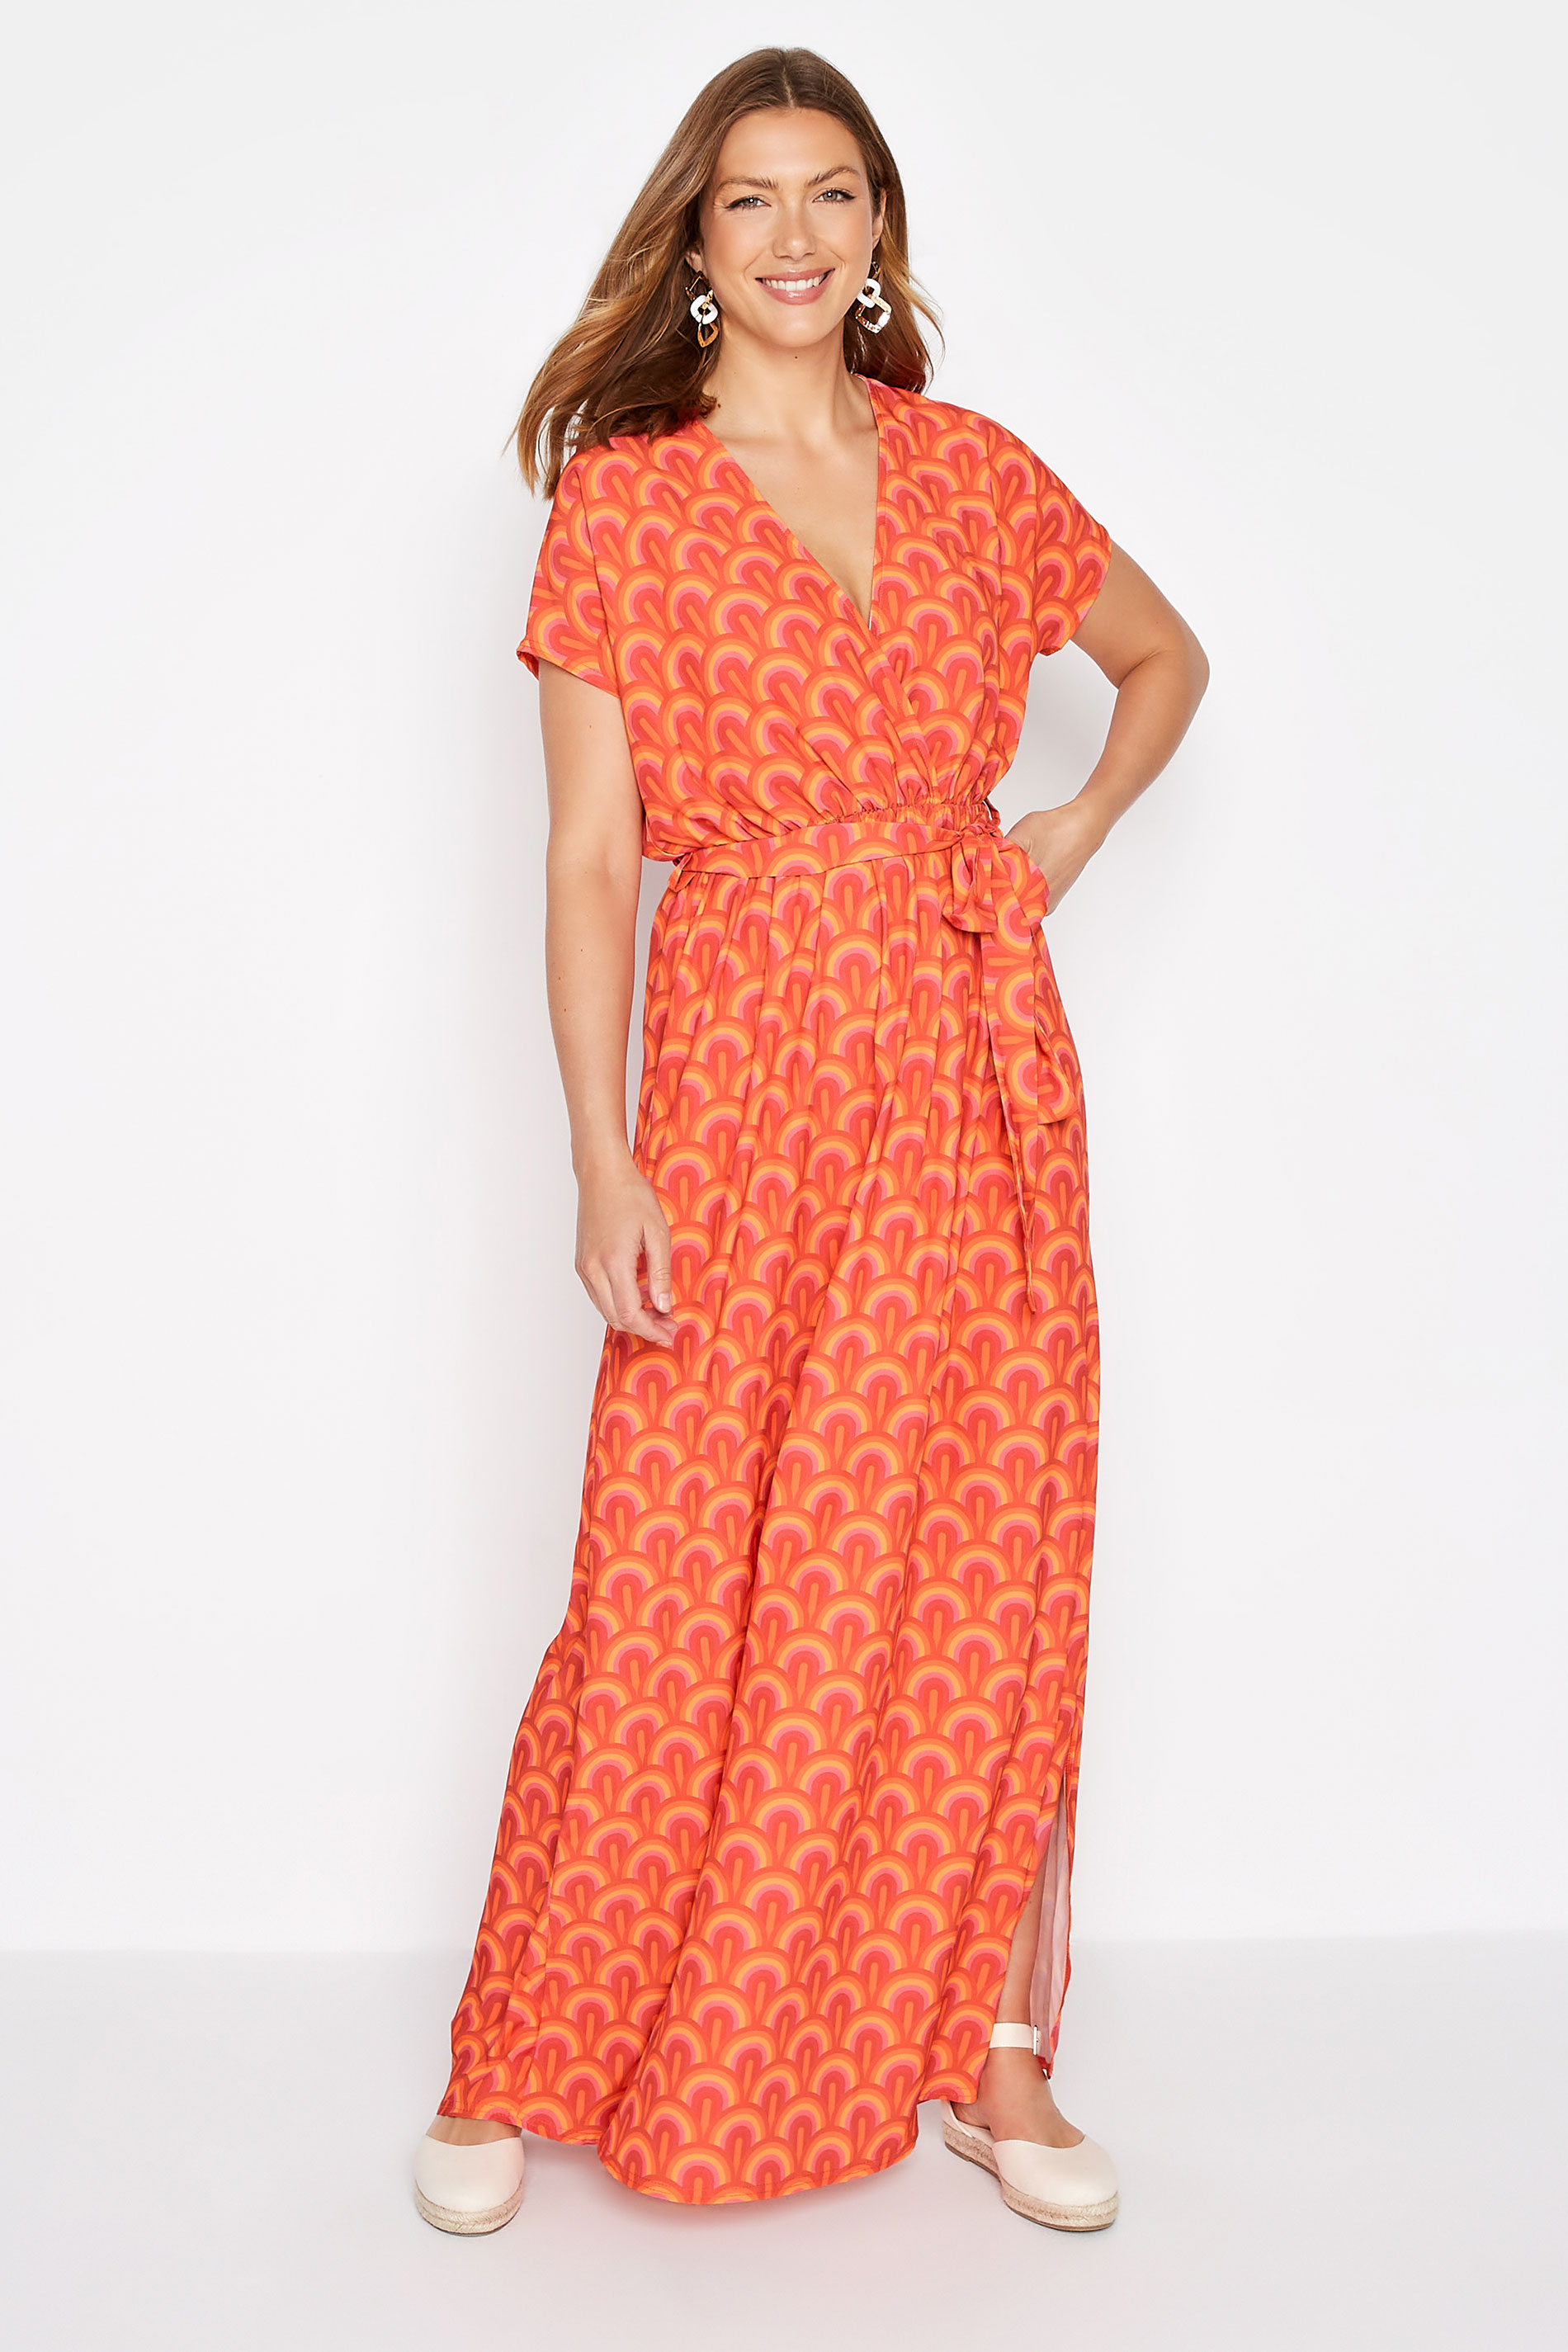 LTS Tall Women's Orange Geometric Print Maxi Dress | Long Tall Sally 1